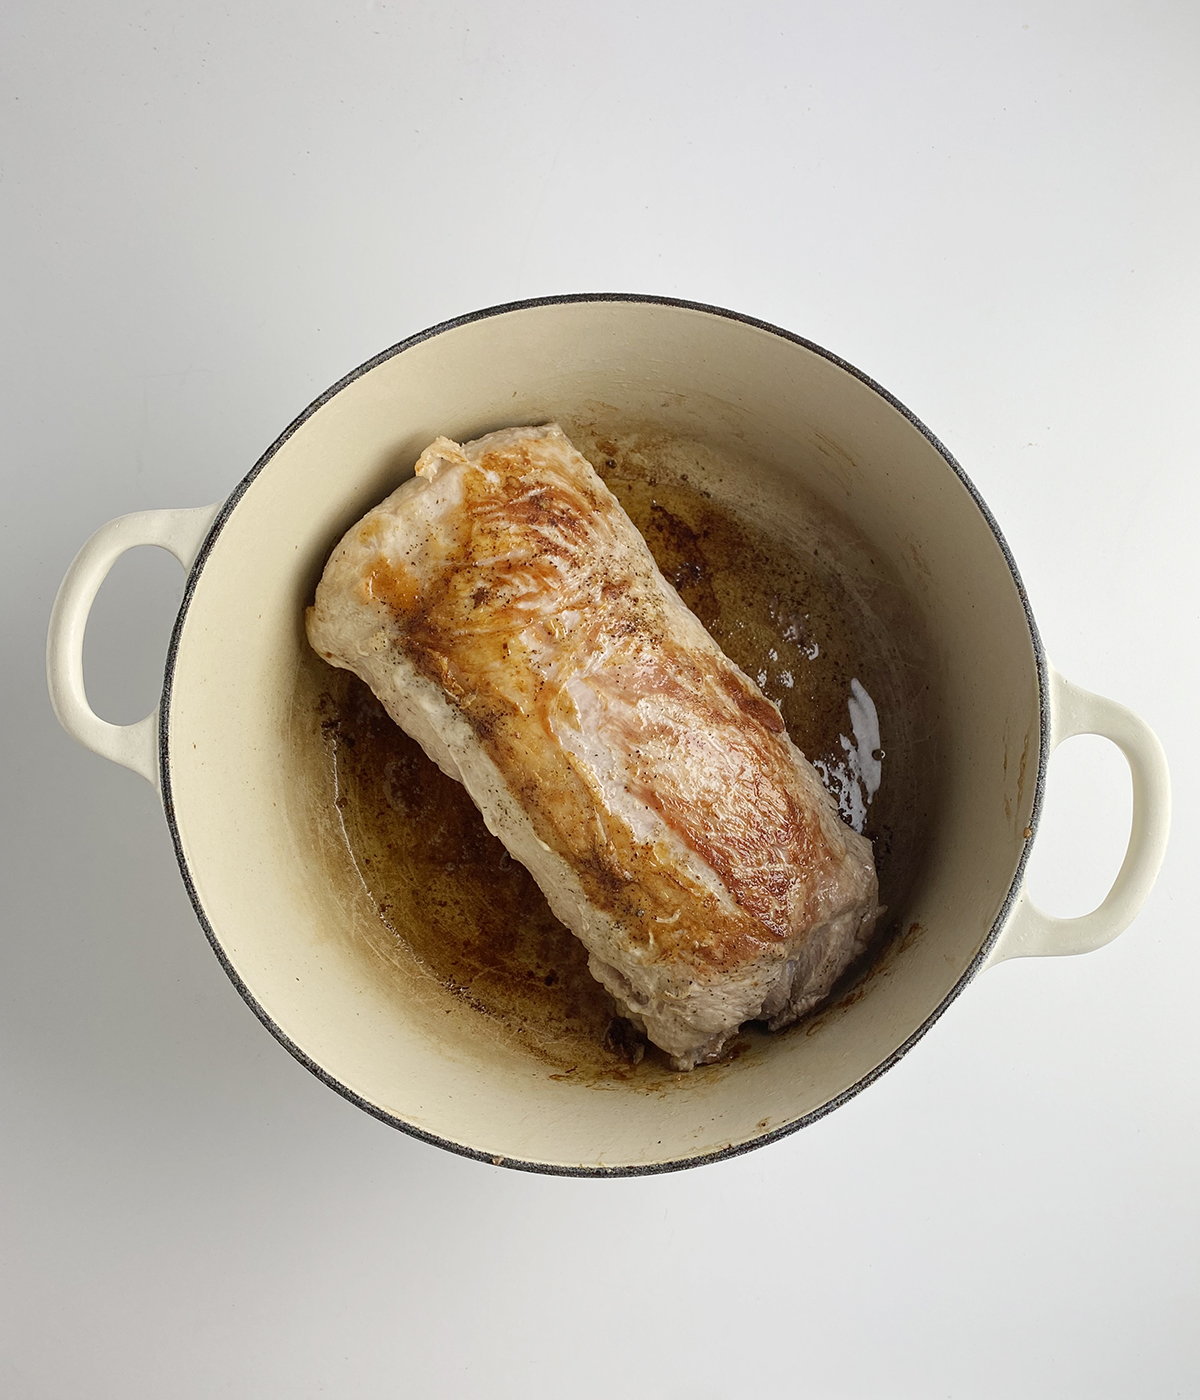 Seared pork roast in a pot.